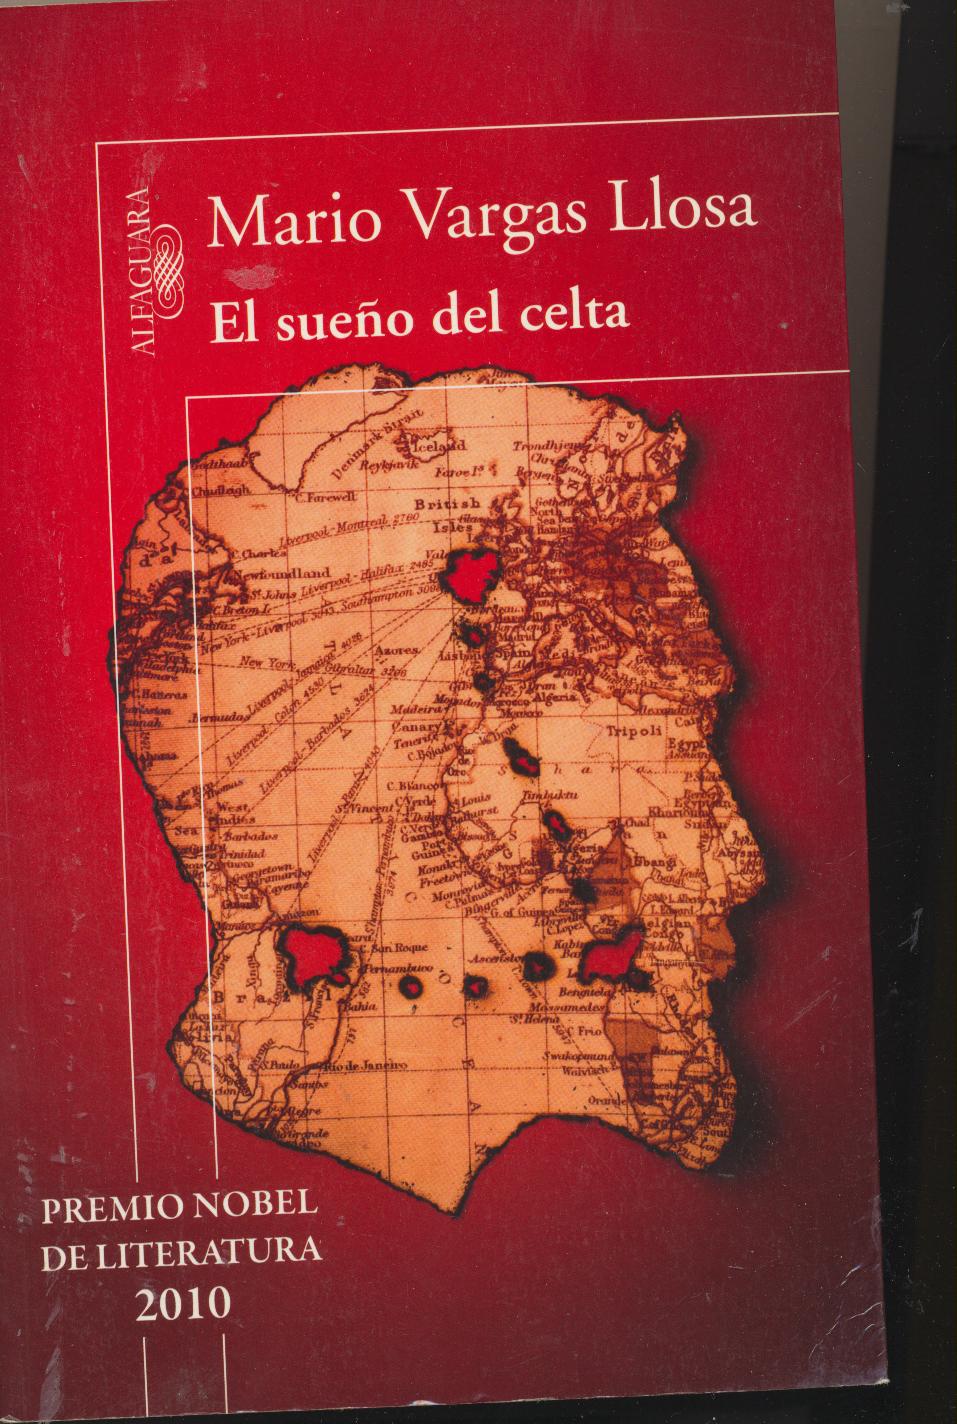 Mario Vargas Llosa. El sueño del celta. Alfagyuara 2010